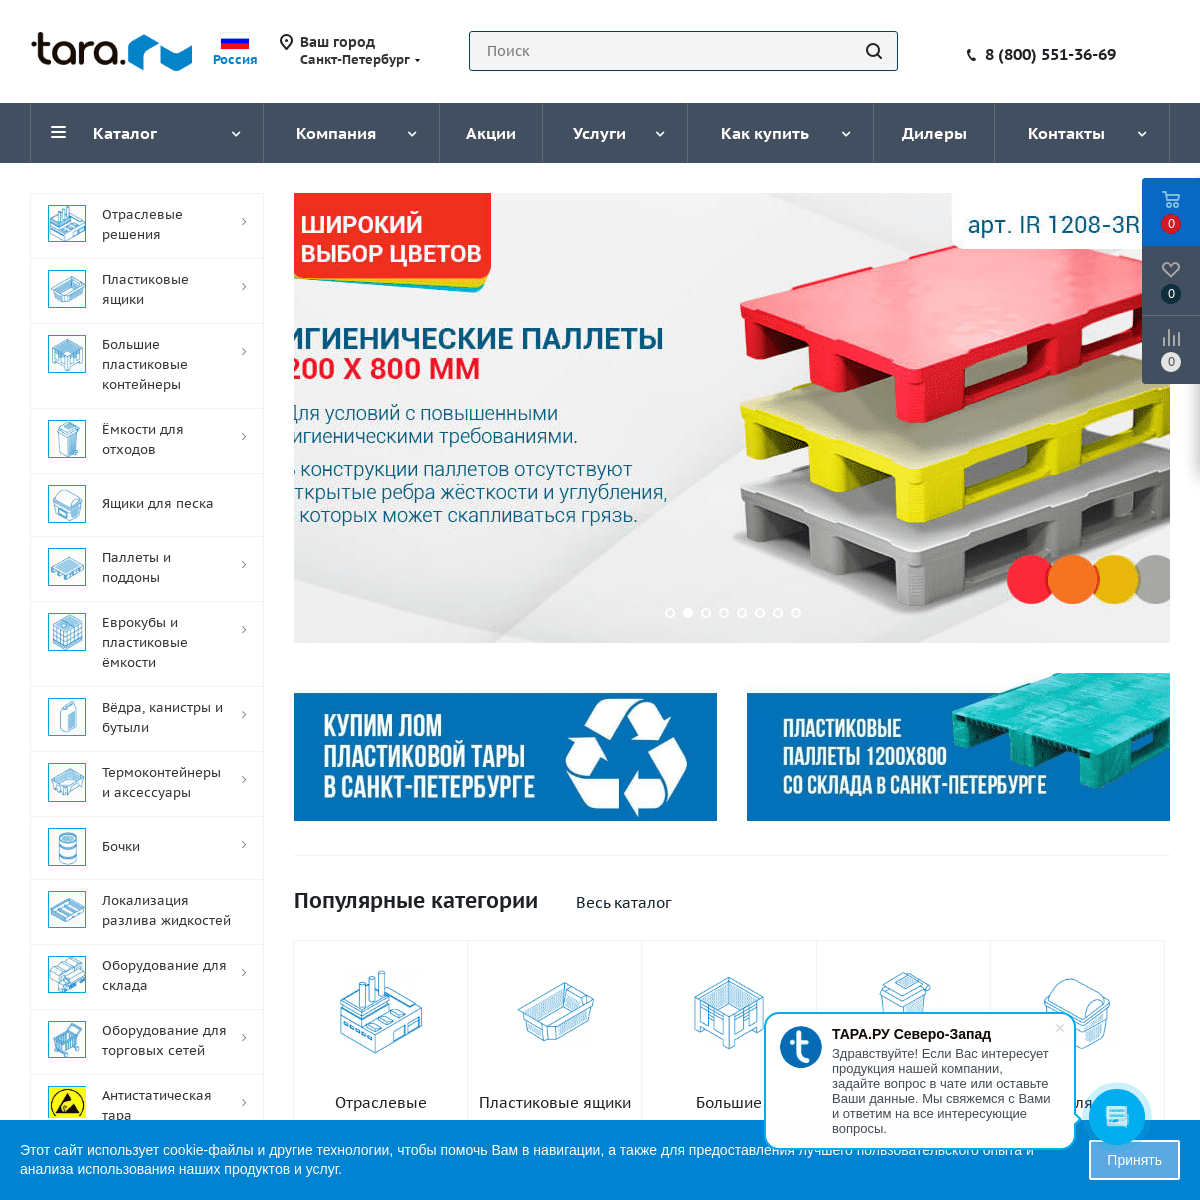 A complete backup of tara.ru